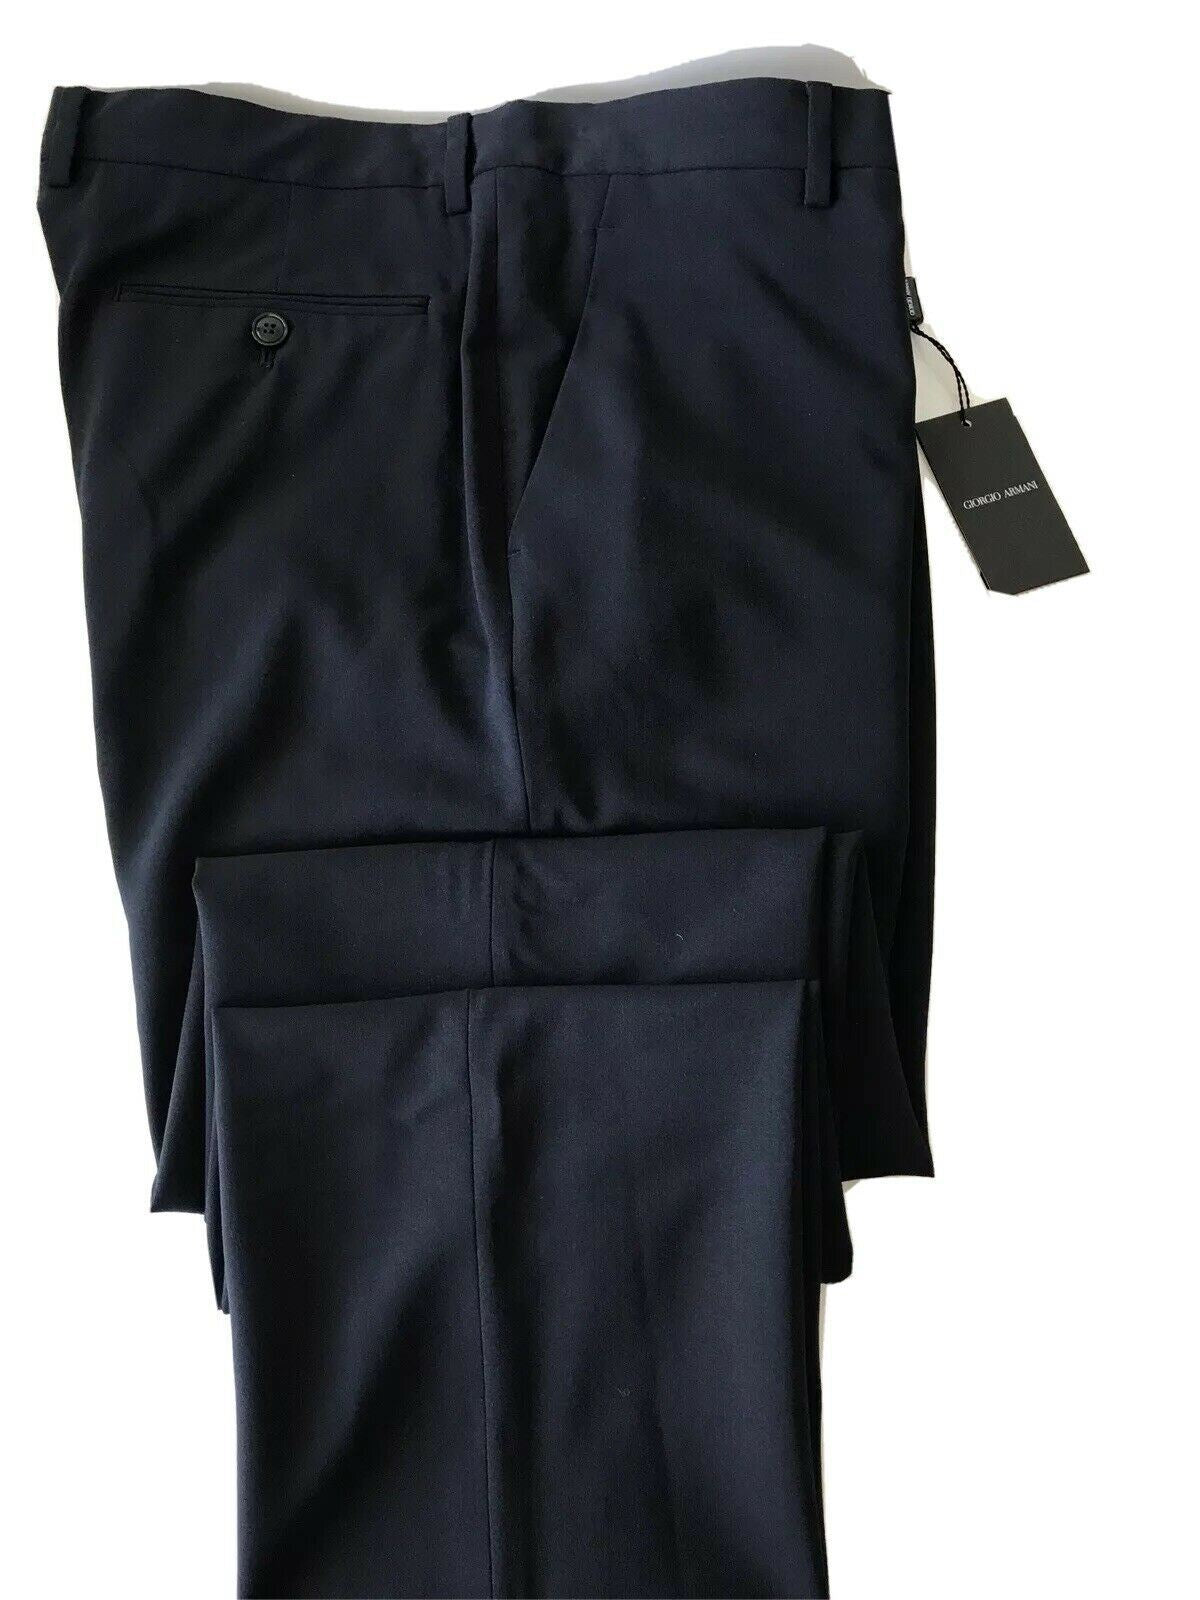 Neu mit Etikett: 975 $ Giorgio Armani Wollanzughose für Herren, Größe 38 US VSP040 – kleiner Schnitt